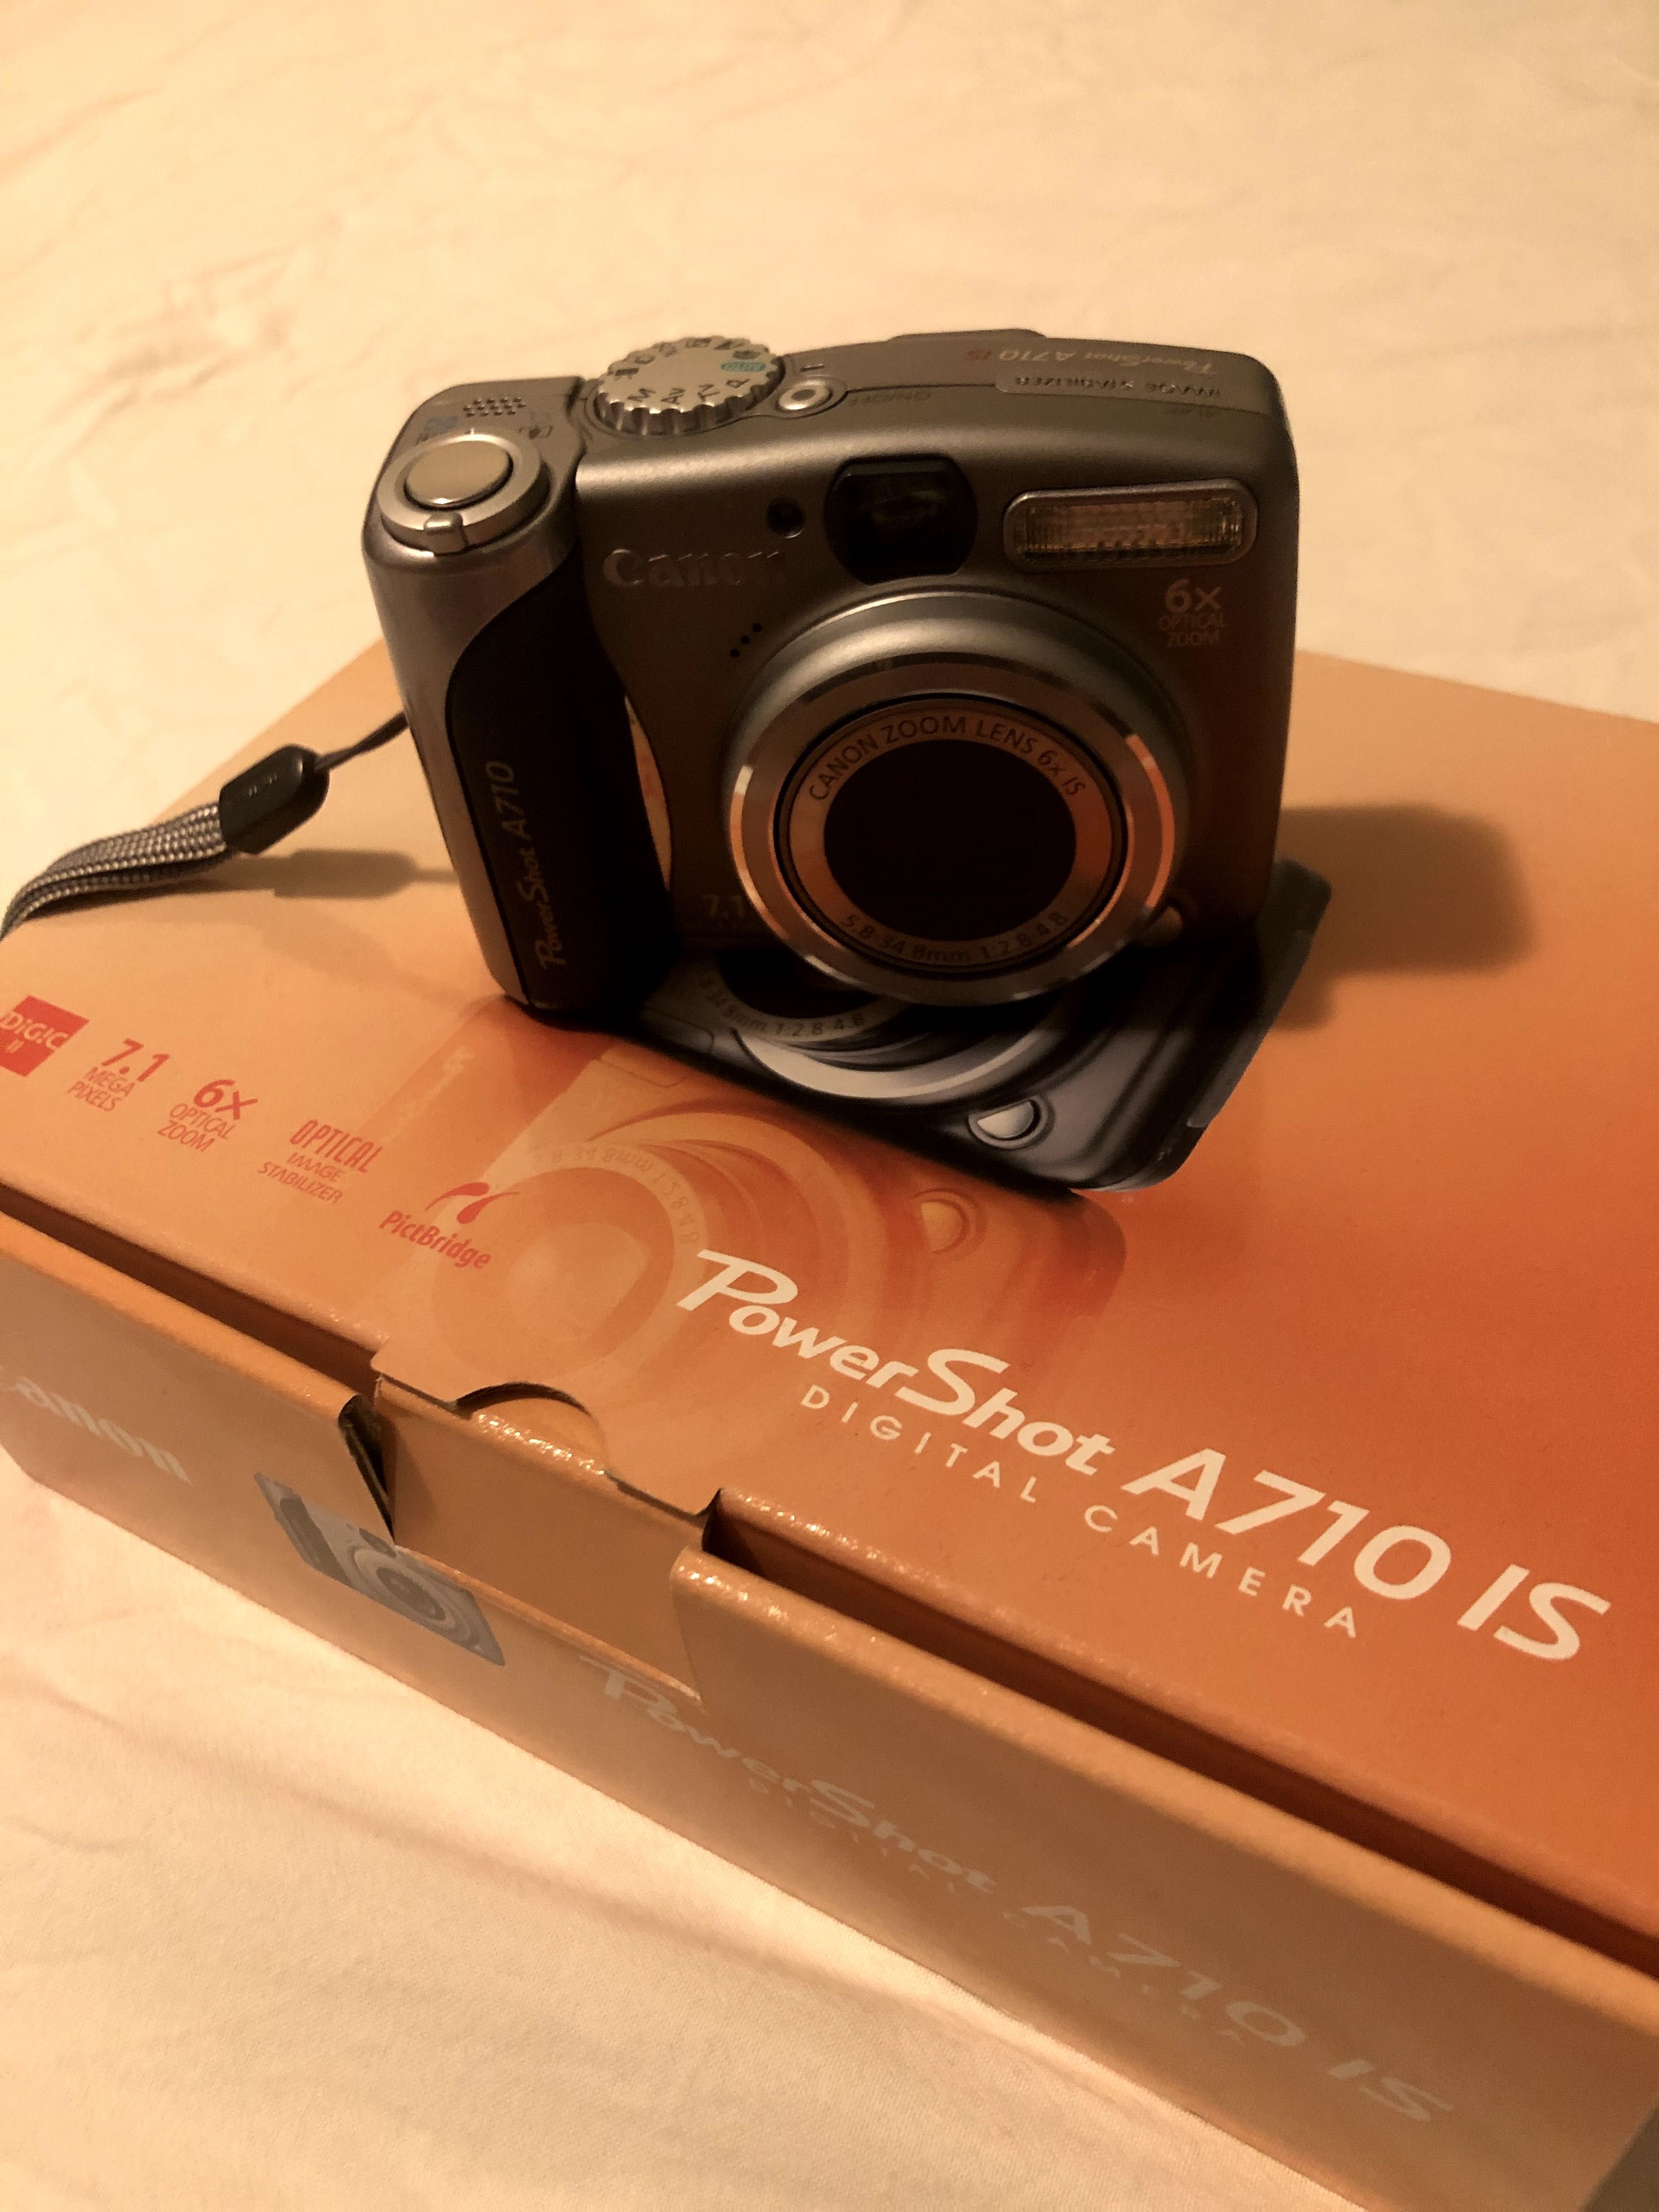 kolekcjonerski aparat fotograficzny Canon PowerShot A710 IS